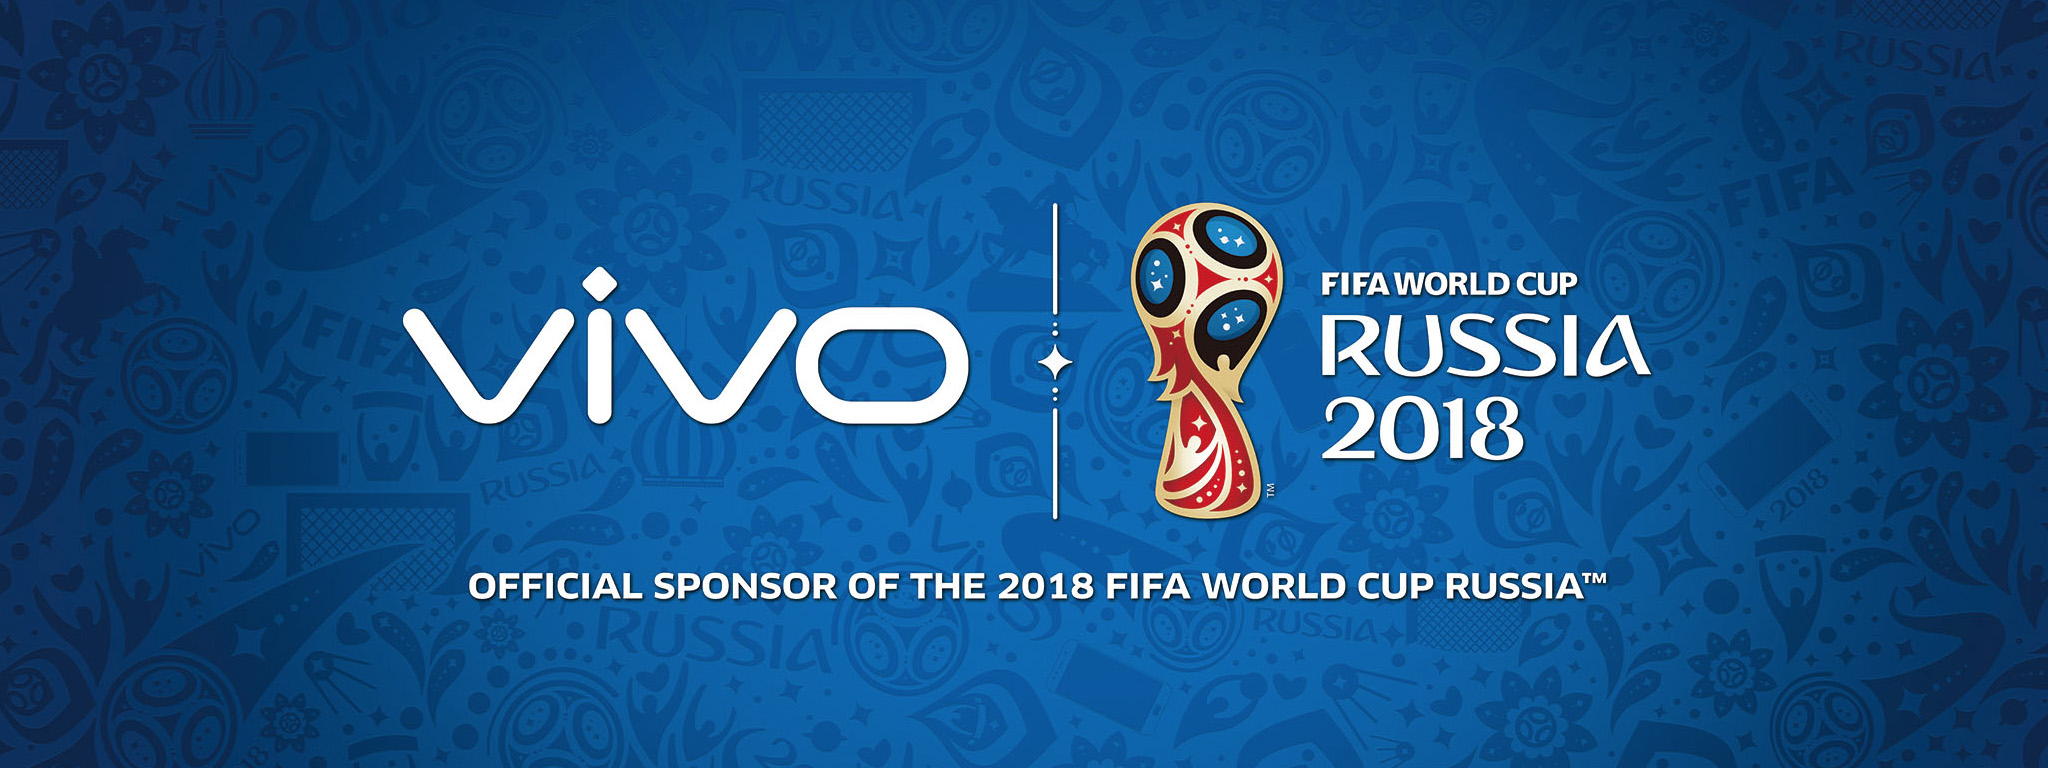 Vivo sẽ là nhà tài trợ chính thức của World Cup 2018 và World Cup 2022